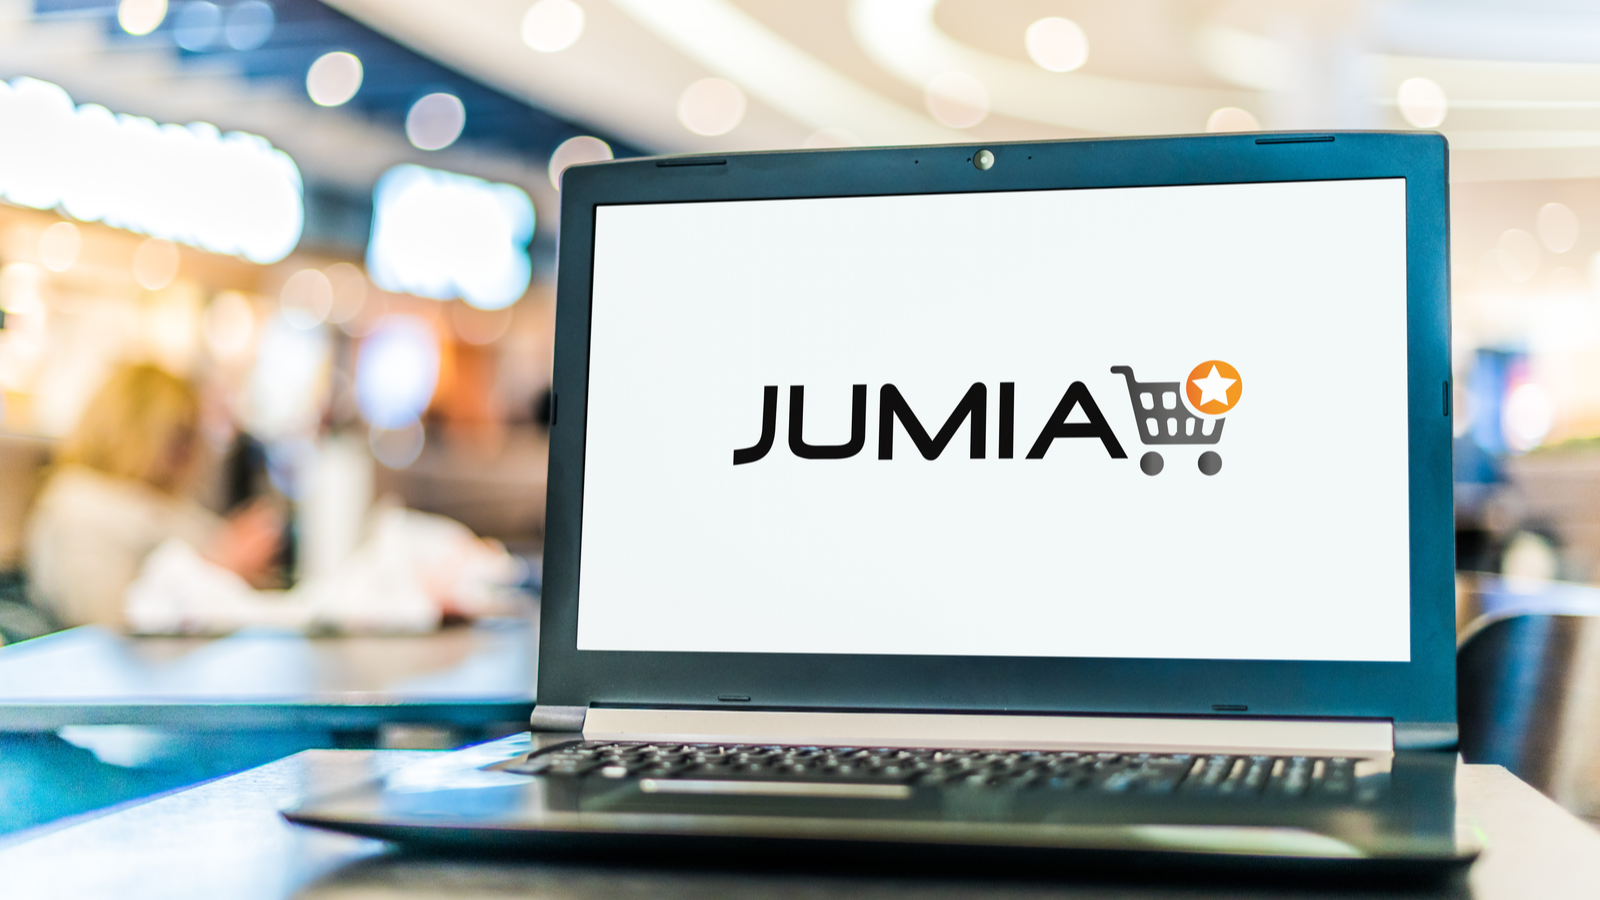 The Jumia (JMIA Stock) logo on a laptop.